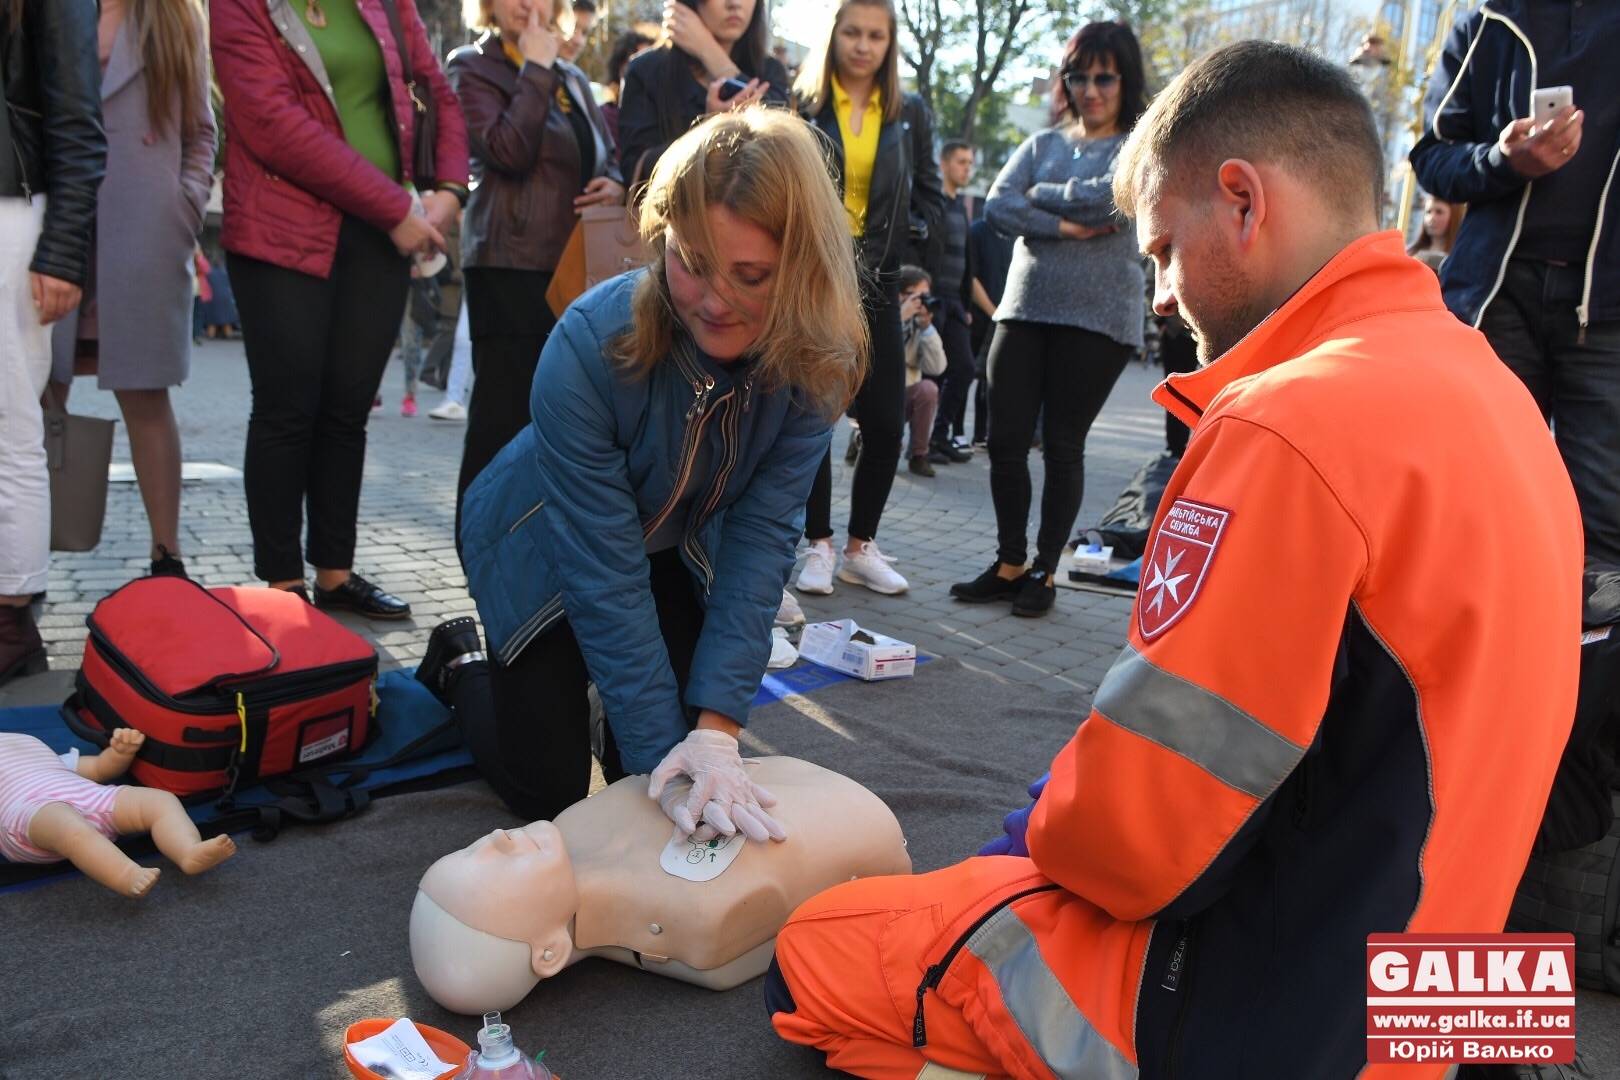 “Кожен може врятувати життя”. У центрі міста франківців навчали, як запустити серце (ФОТО)